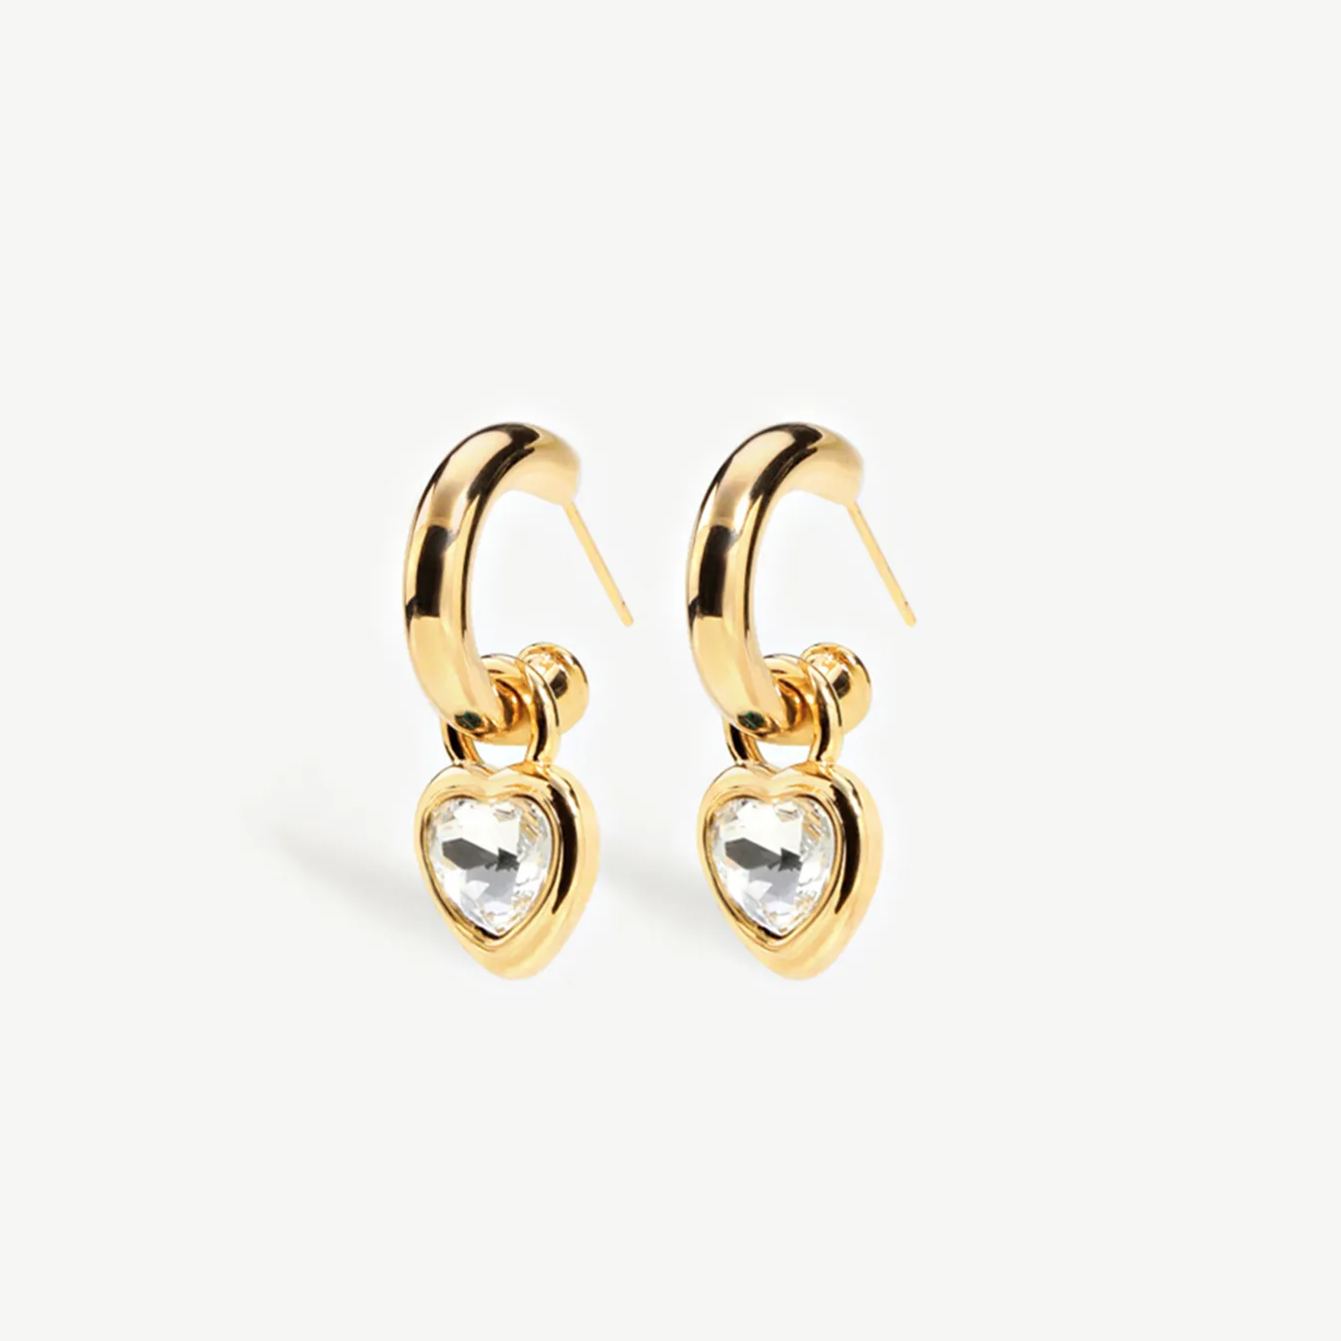 Buy Gold Huggie Hoop Earrings for Women - DedeJill